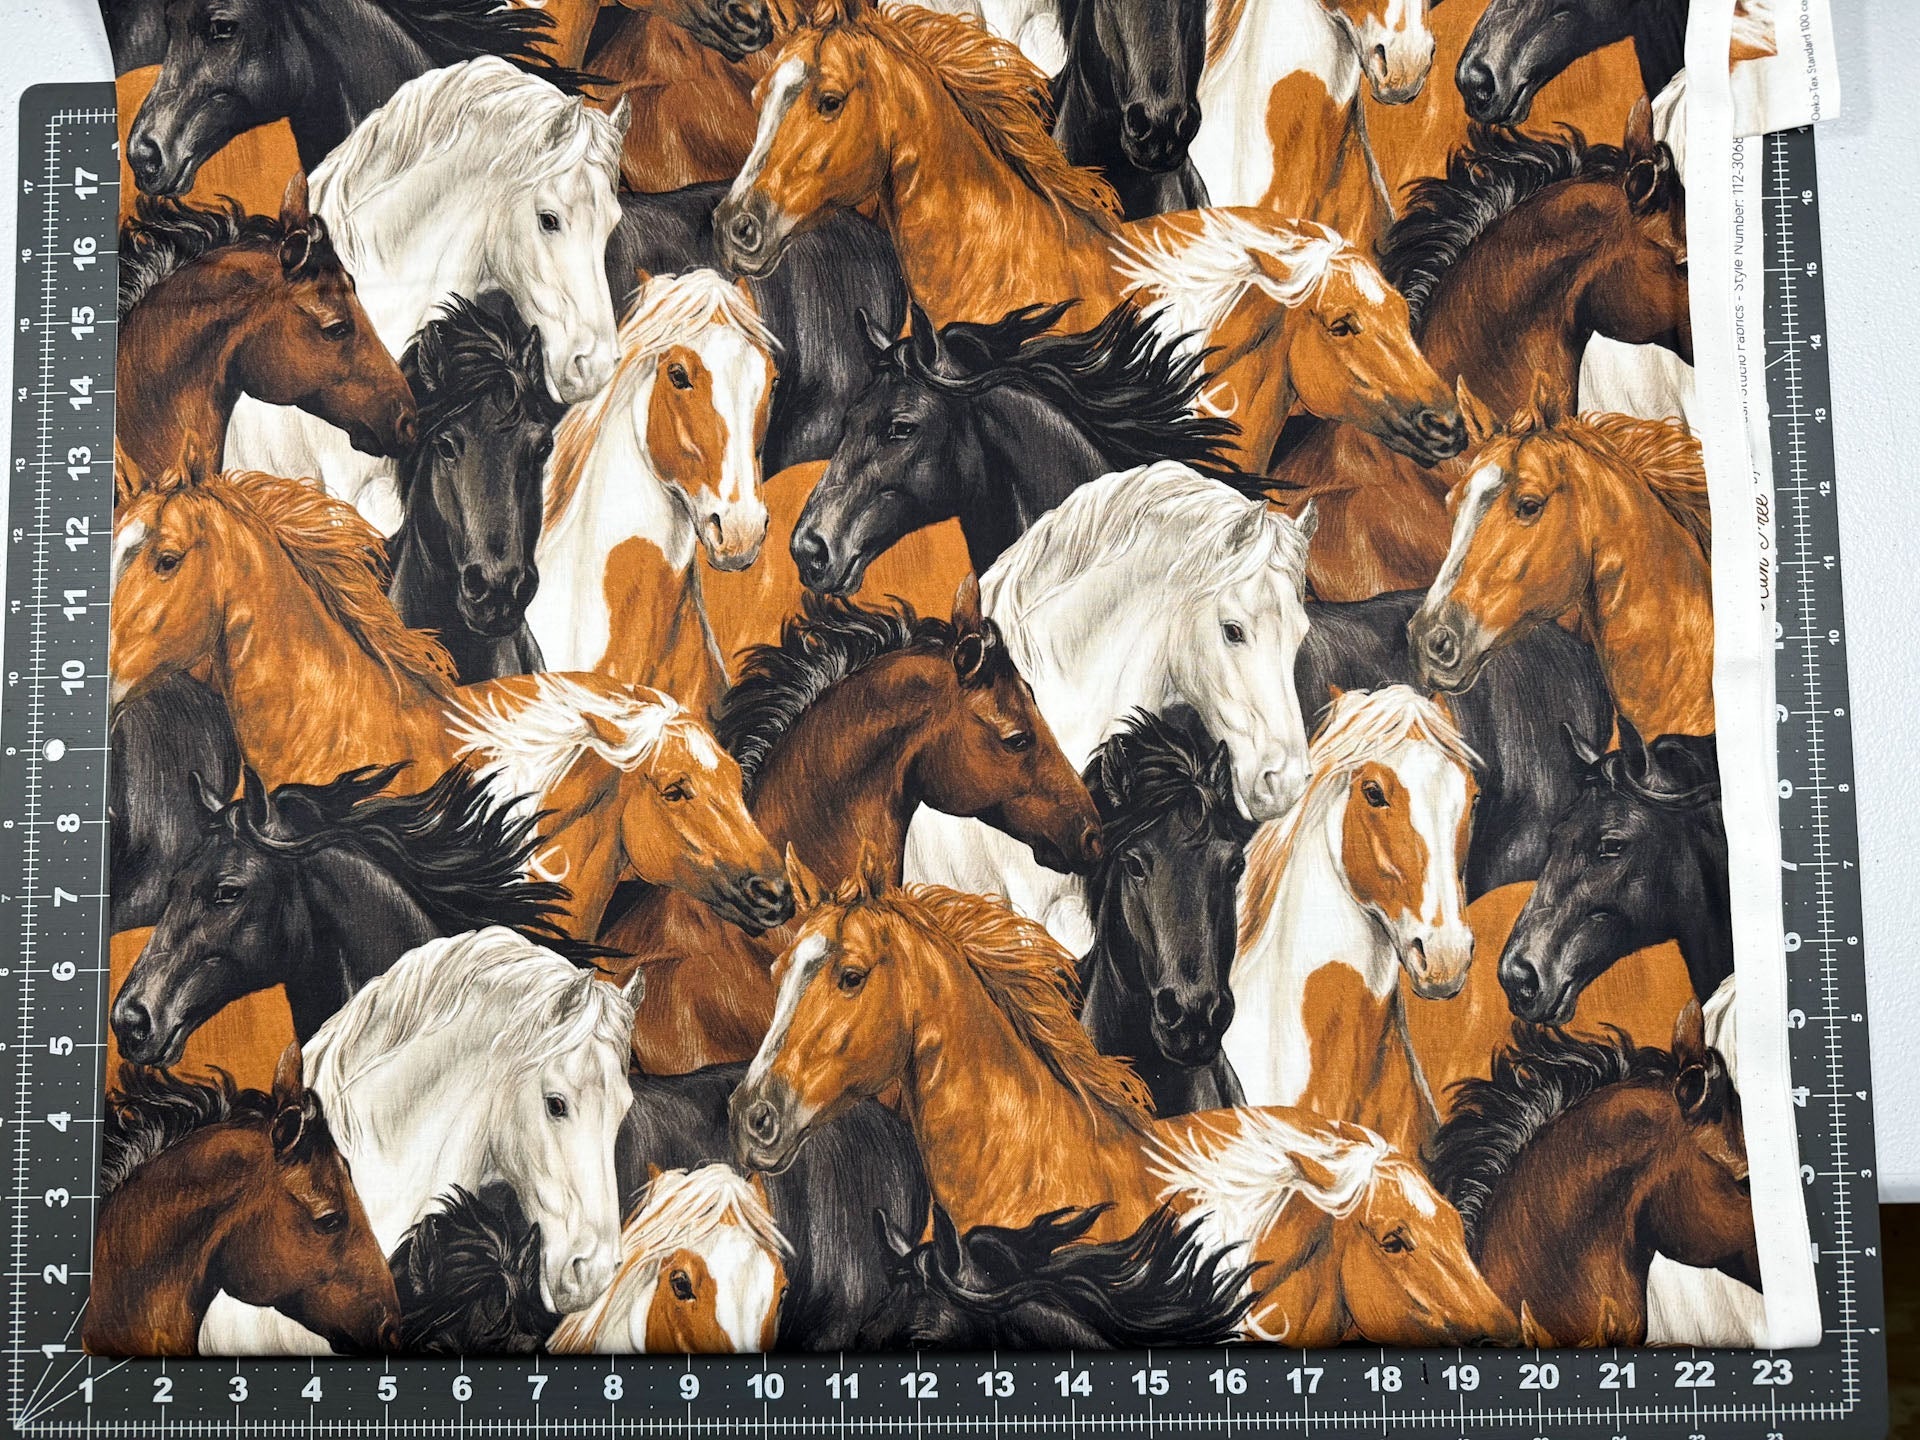 Run Free Horses fabric by the yard Paintbrush Studios